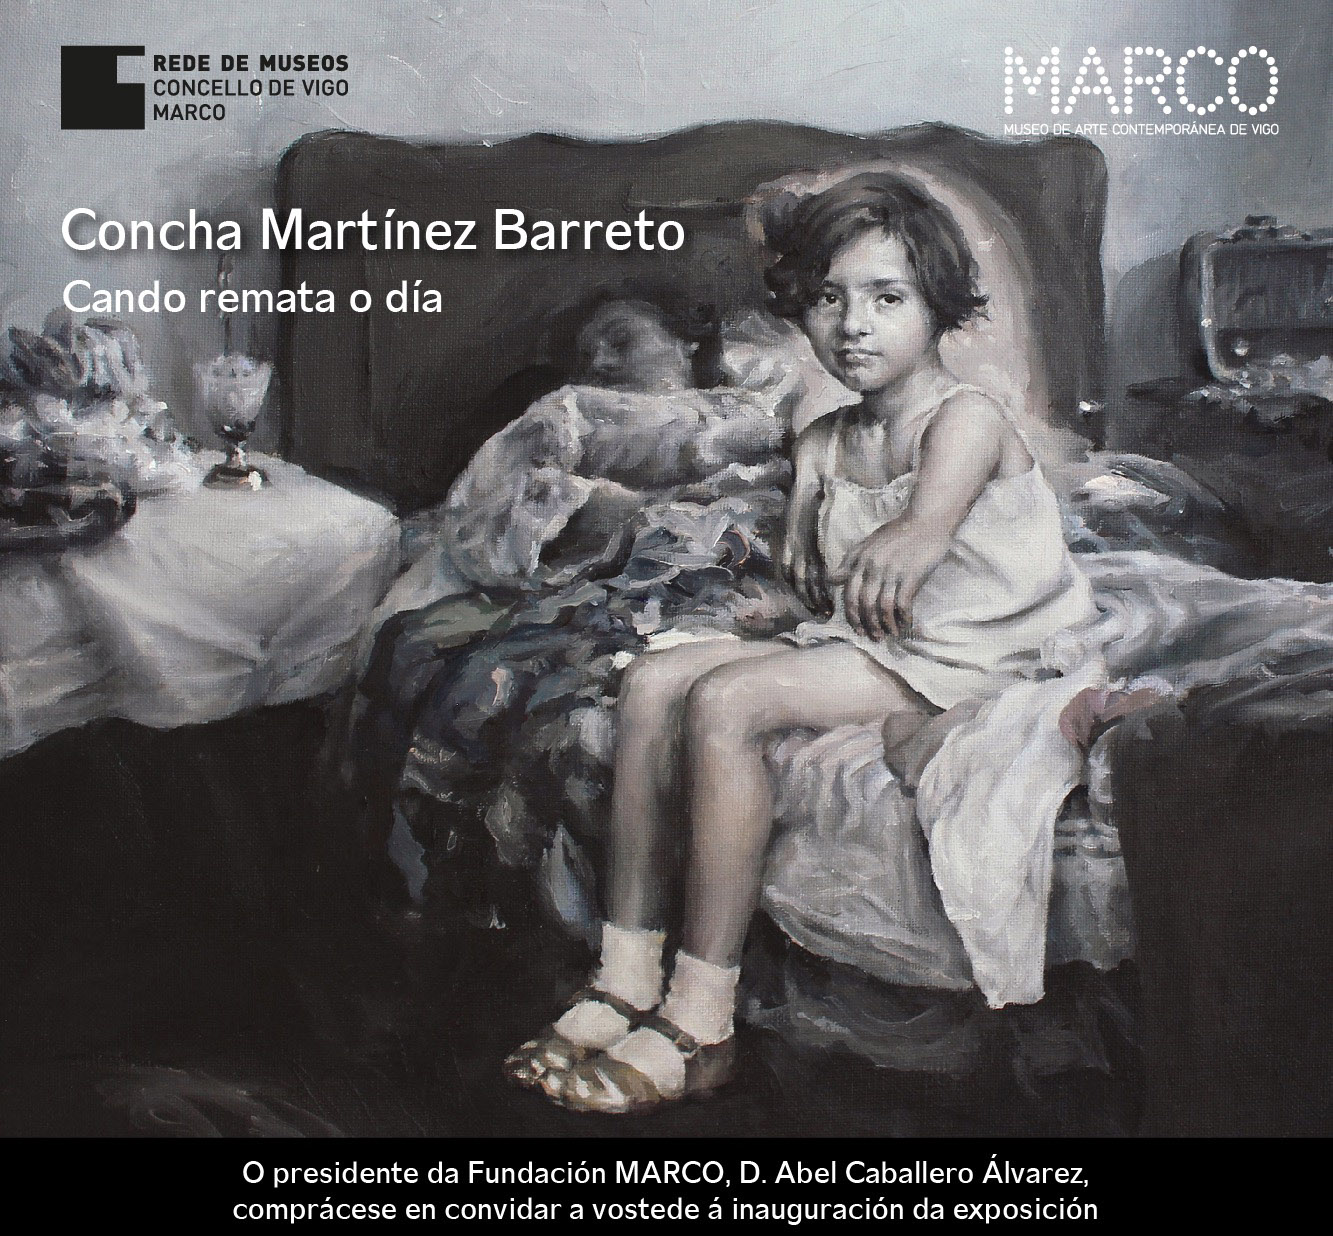 Concha Martínez Barreto en el MARCO de Vigo